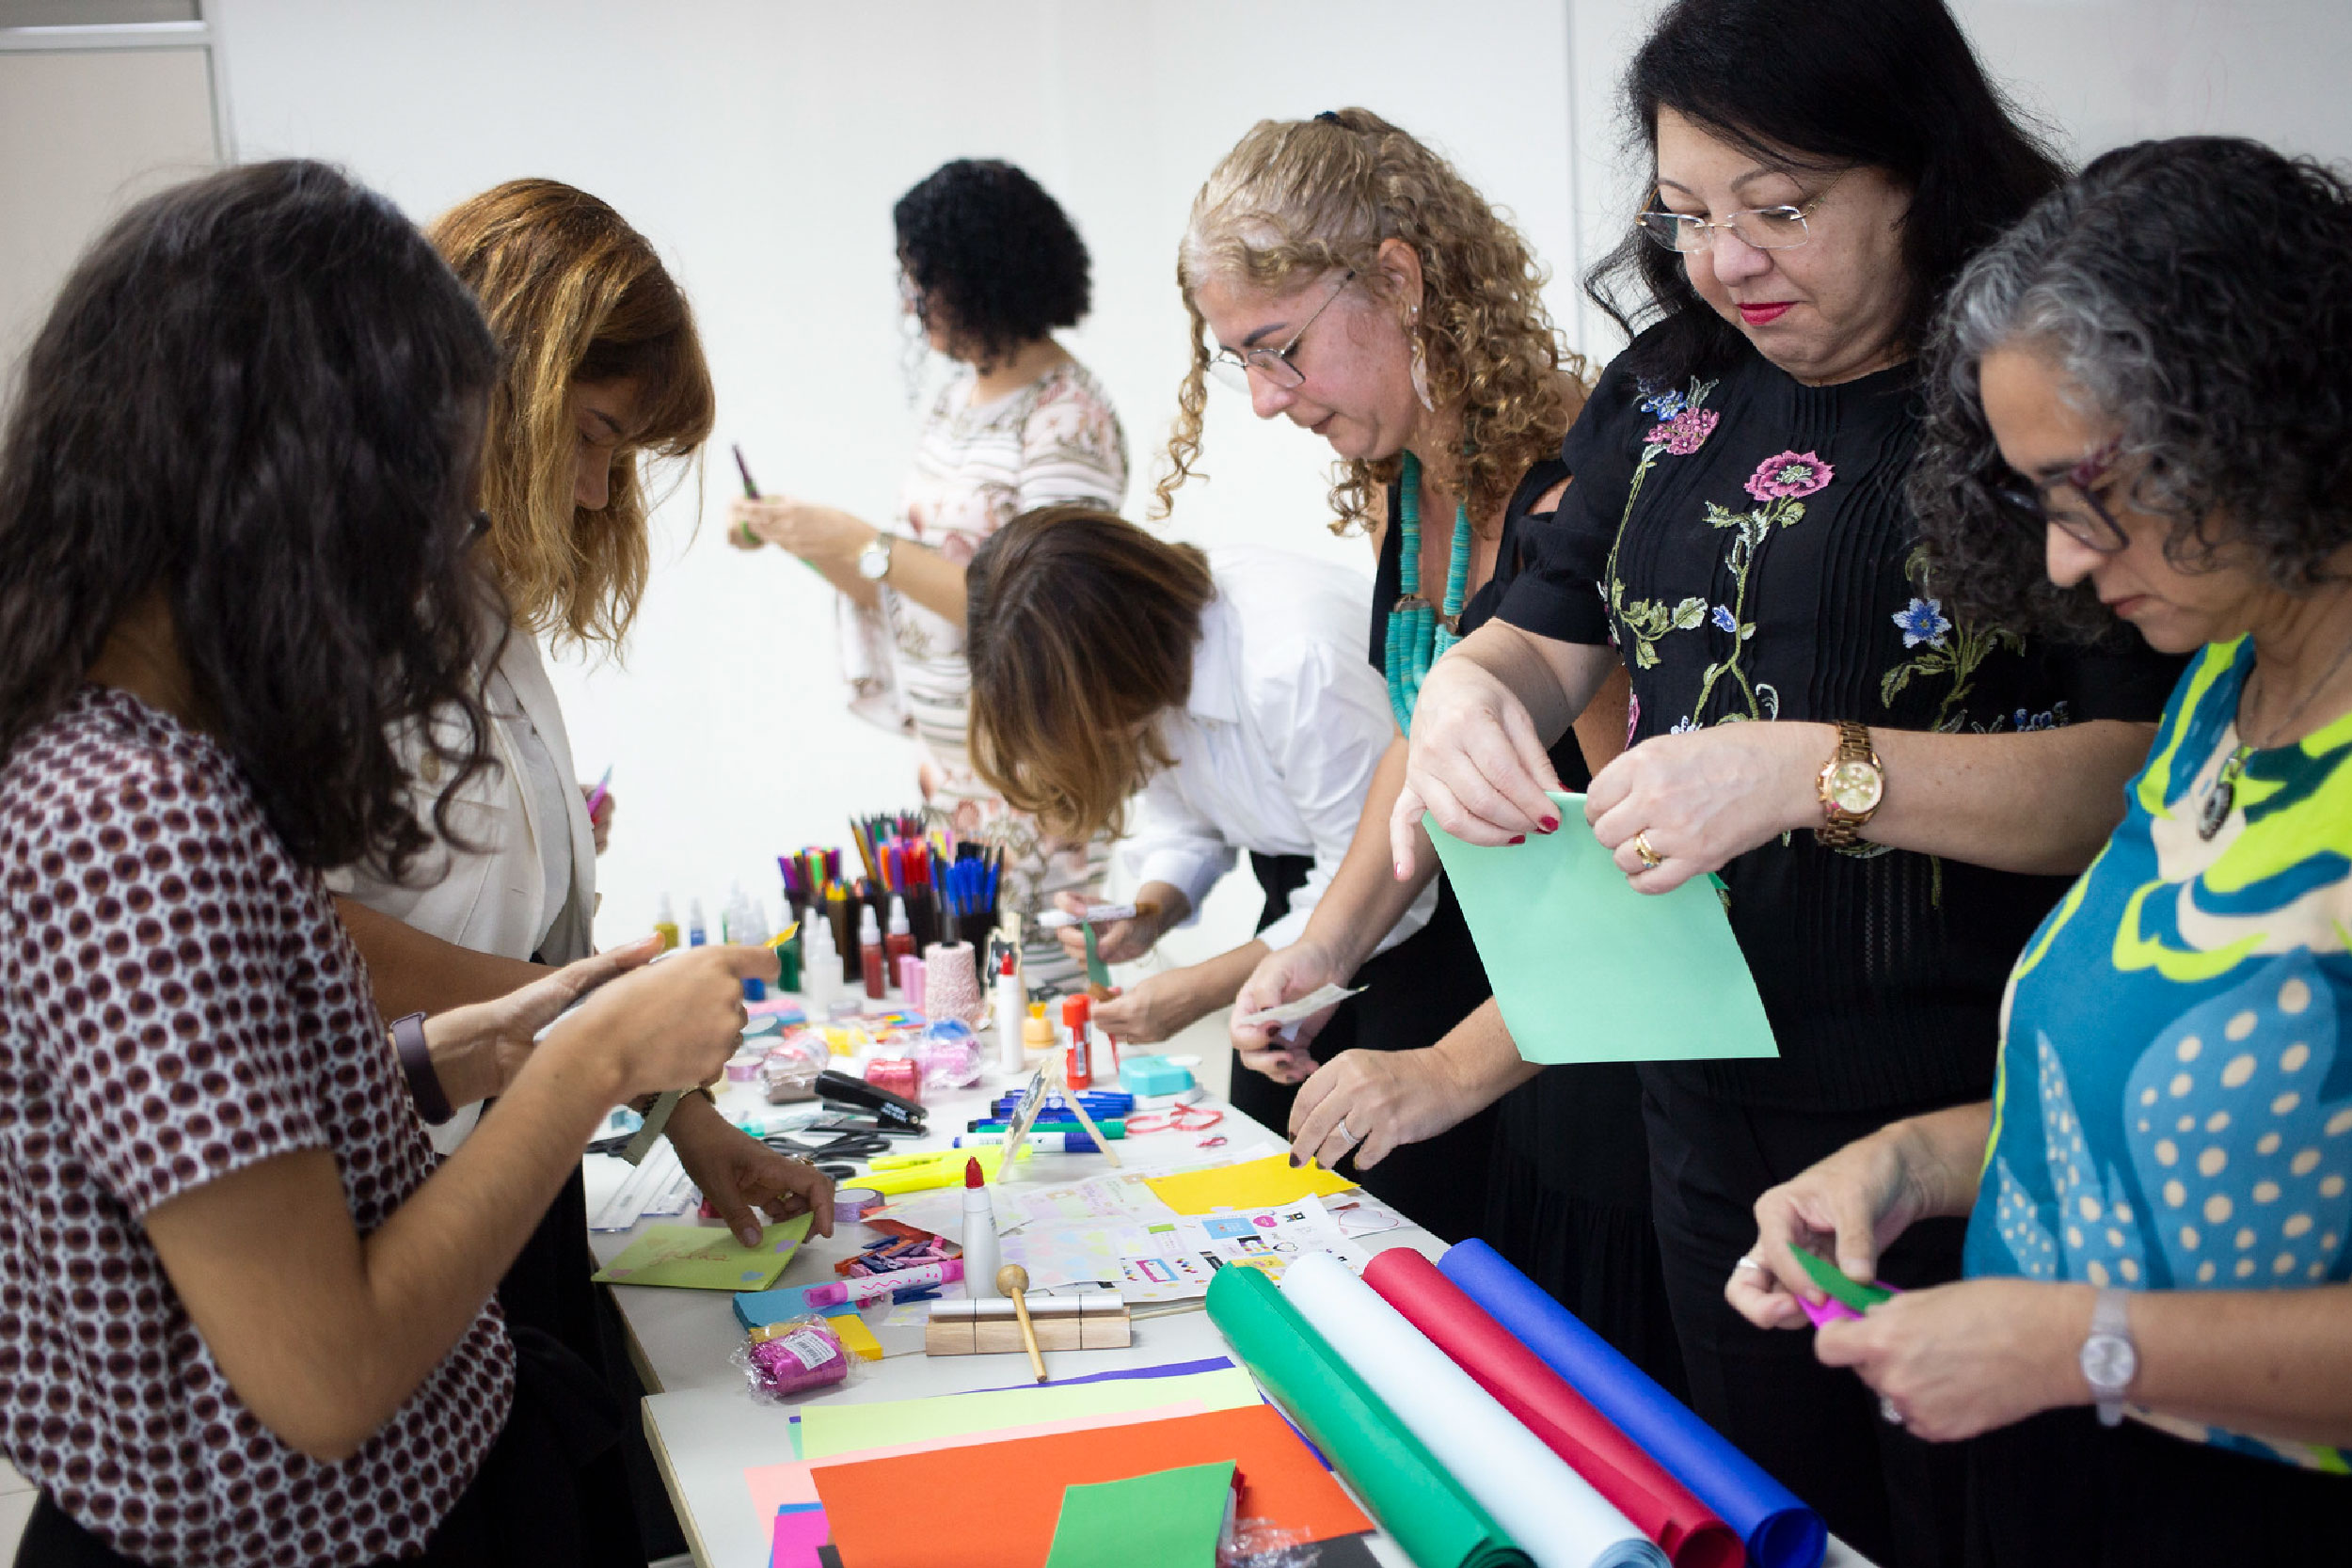 Ilustração de participantes do evento fazendo trabalhos manuais com materiais coloridos